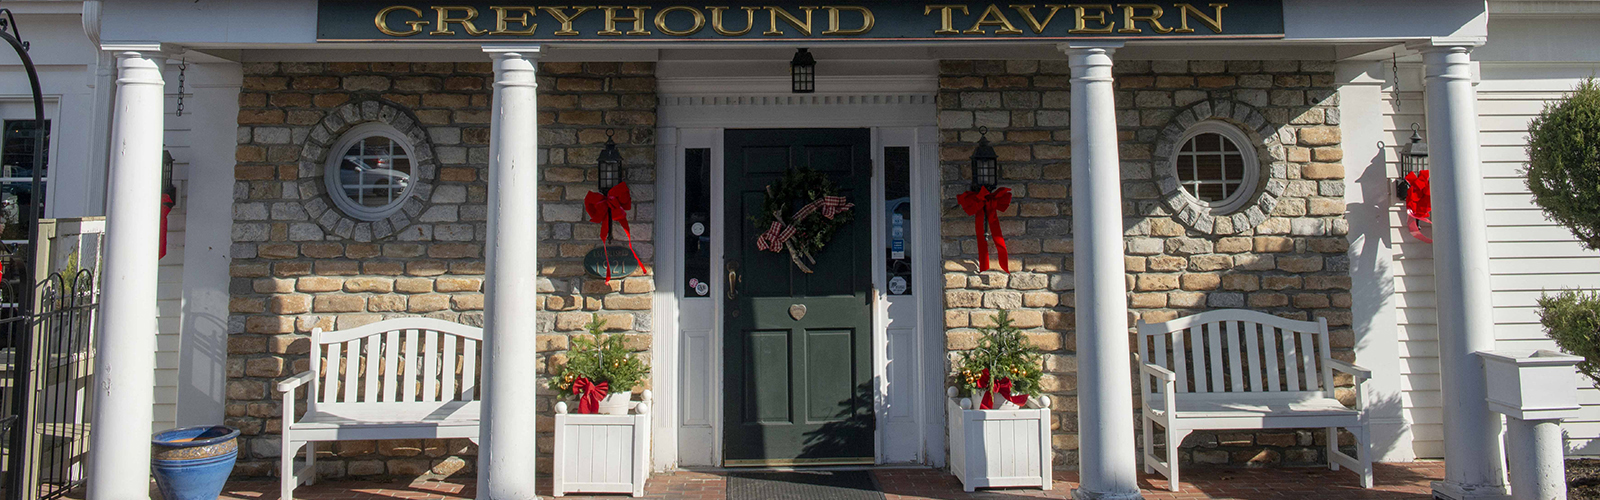 The Greyhound Tavern in Ft. Mitchell